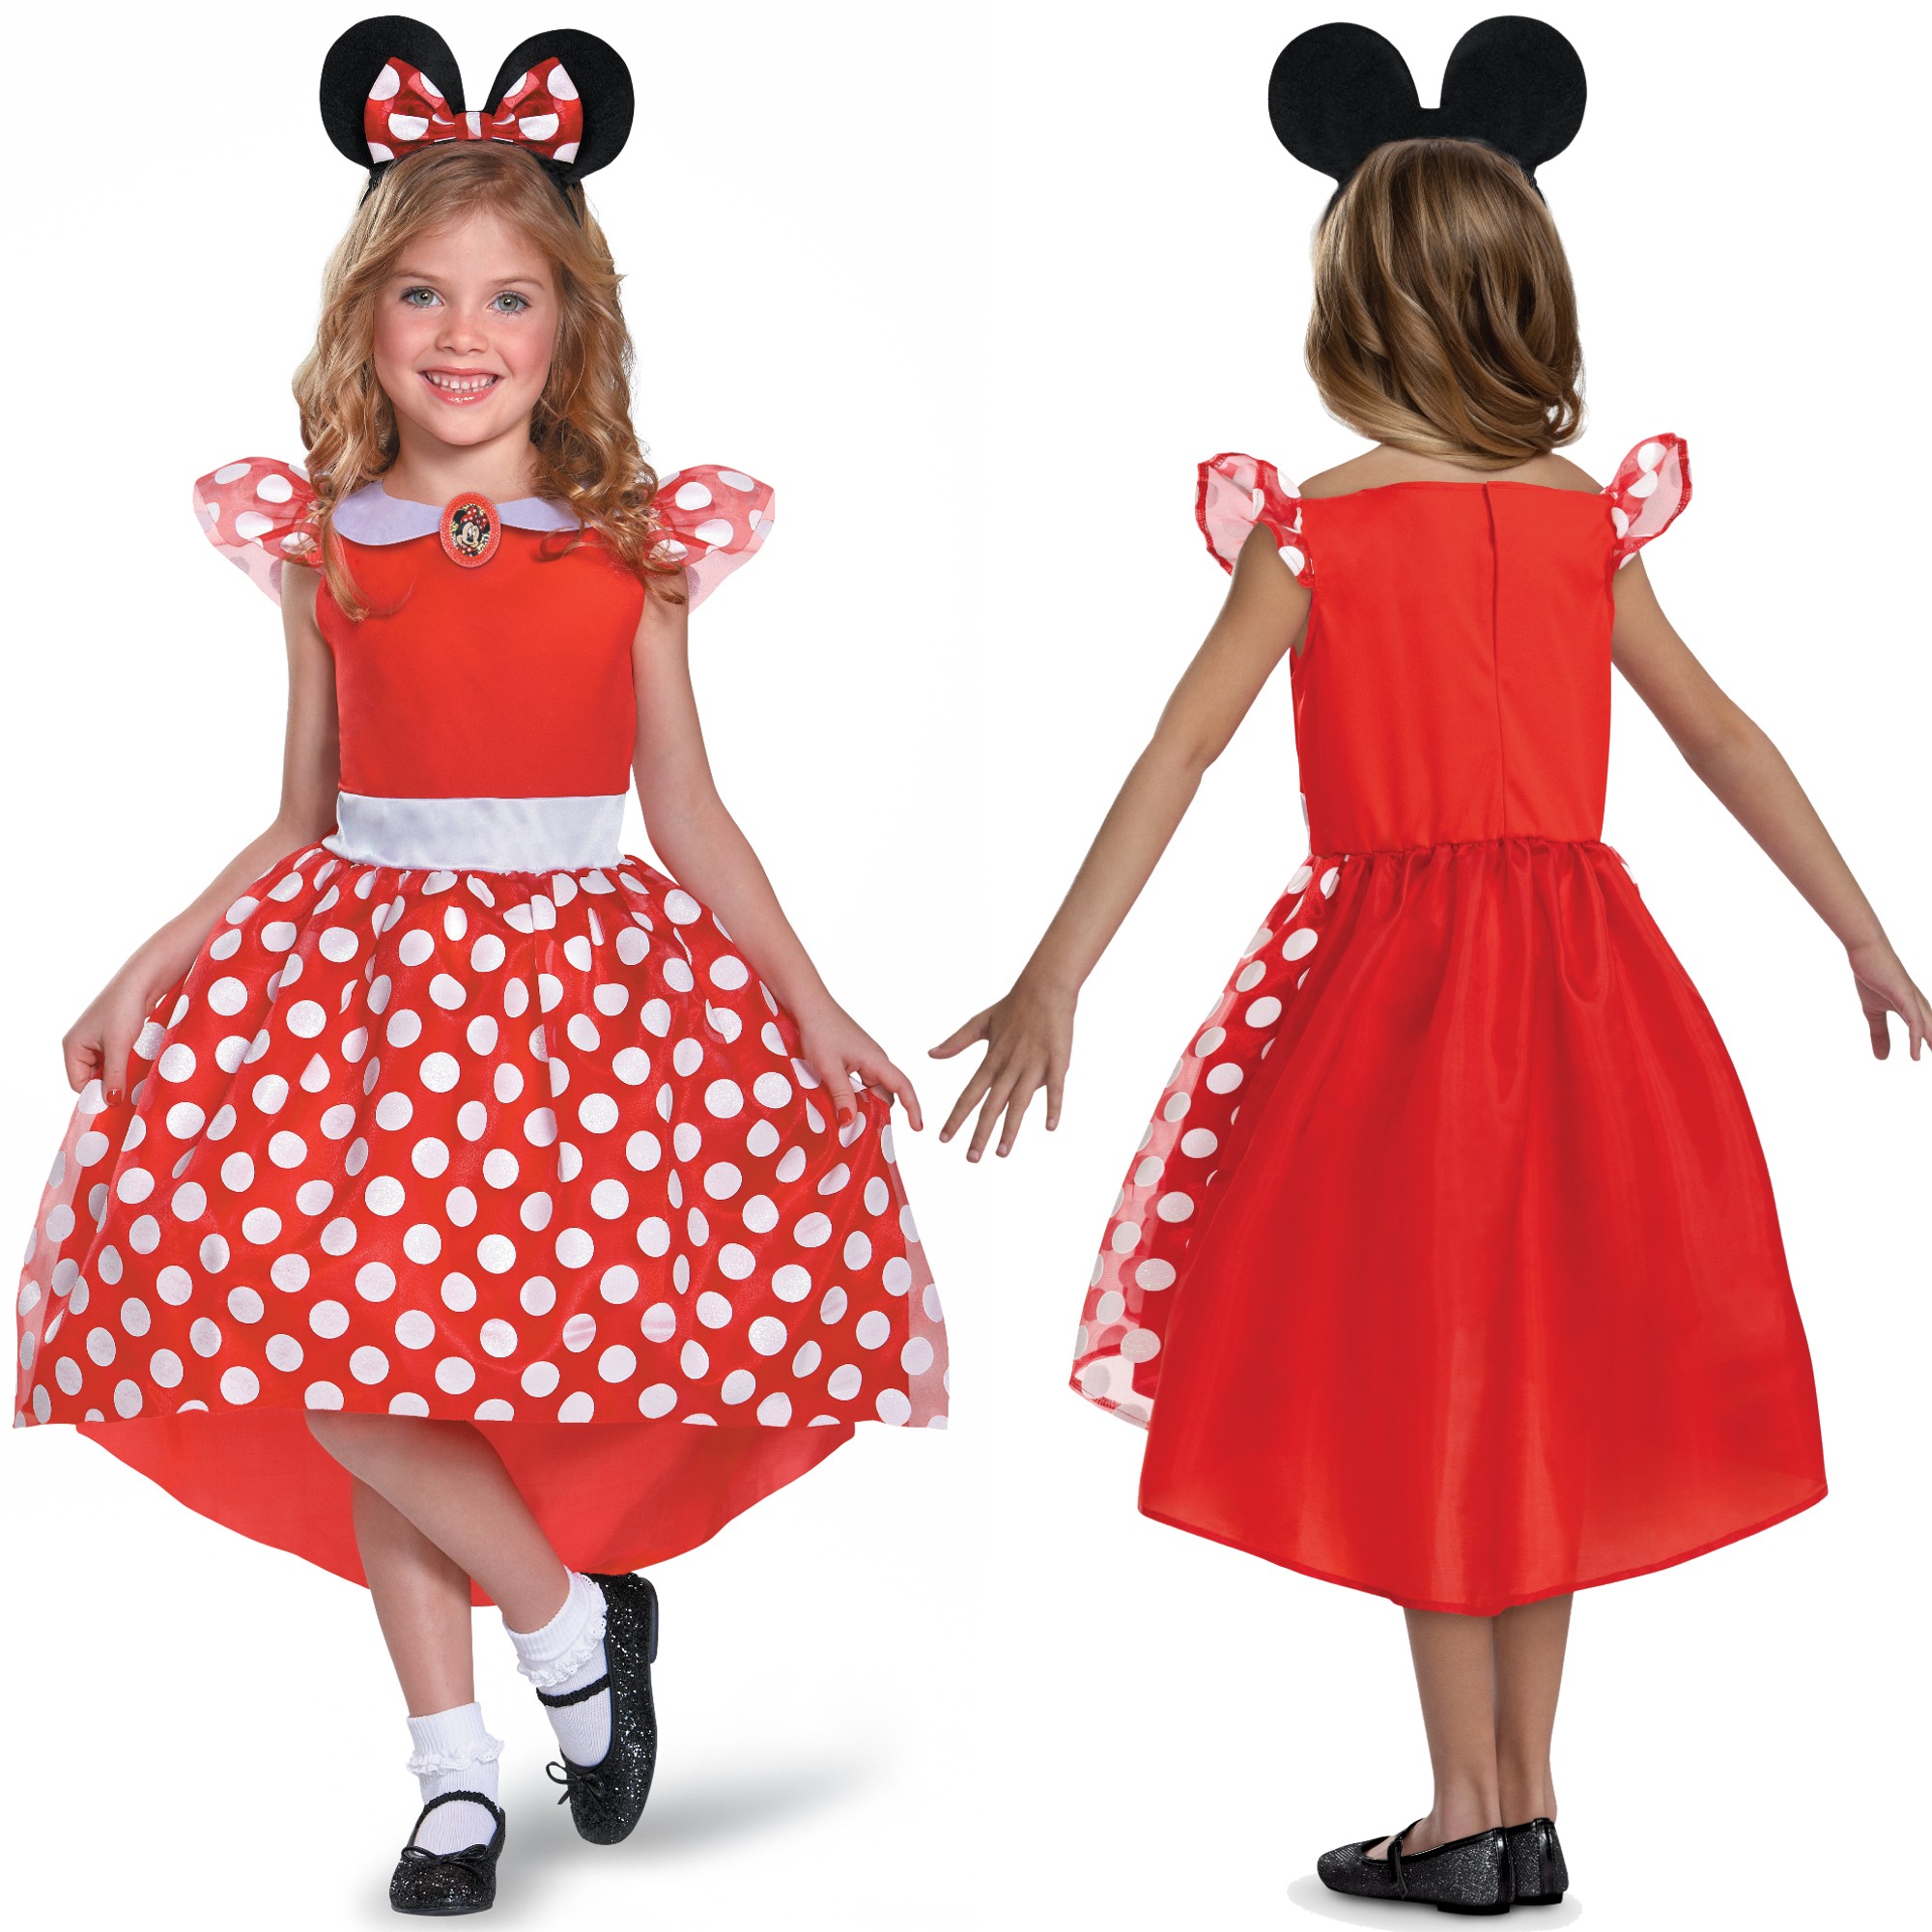 Strj karnawaowy Disney dla dziewczynki Myszka Minnie kostium przebranie 110-122 cm (5-6 lat)